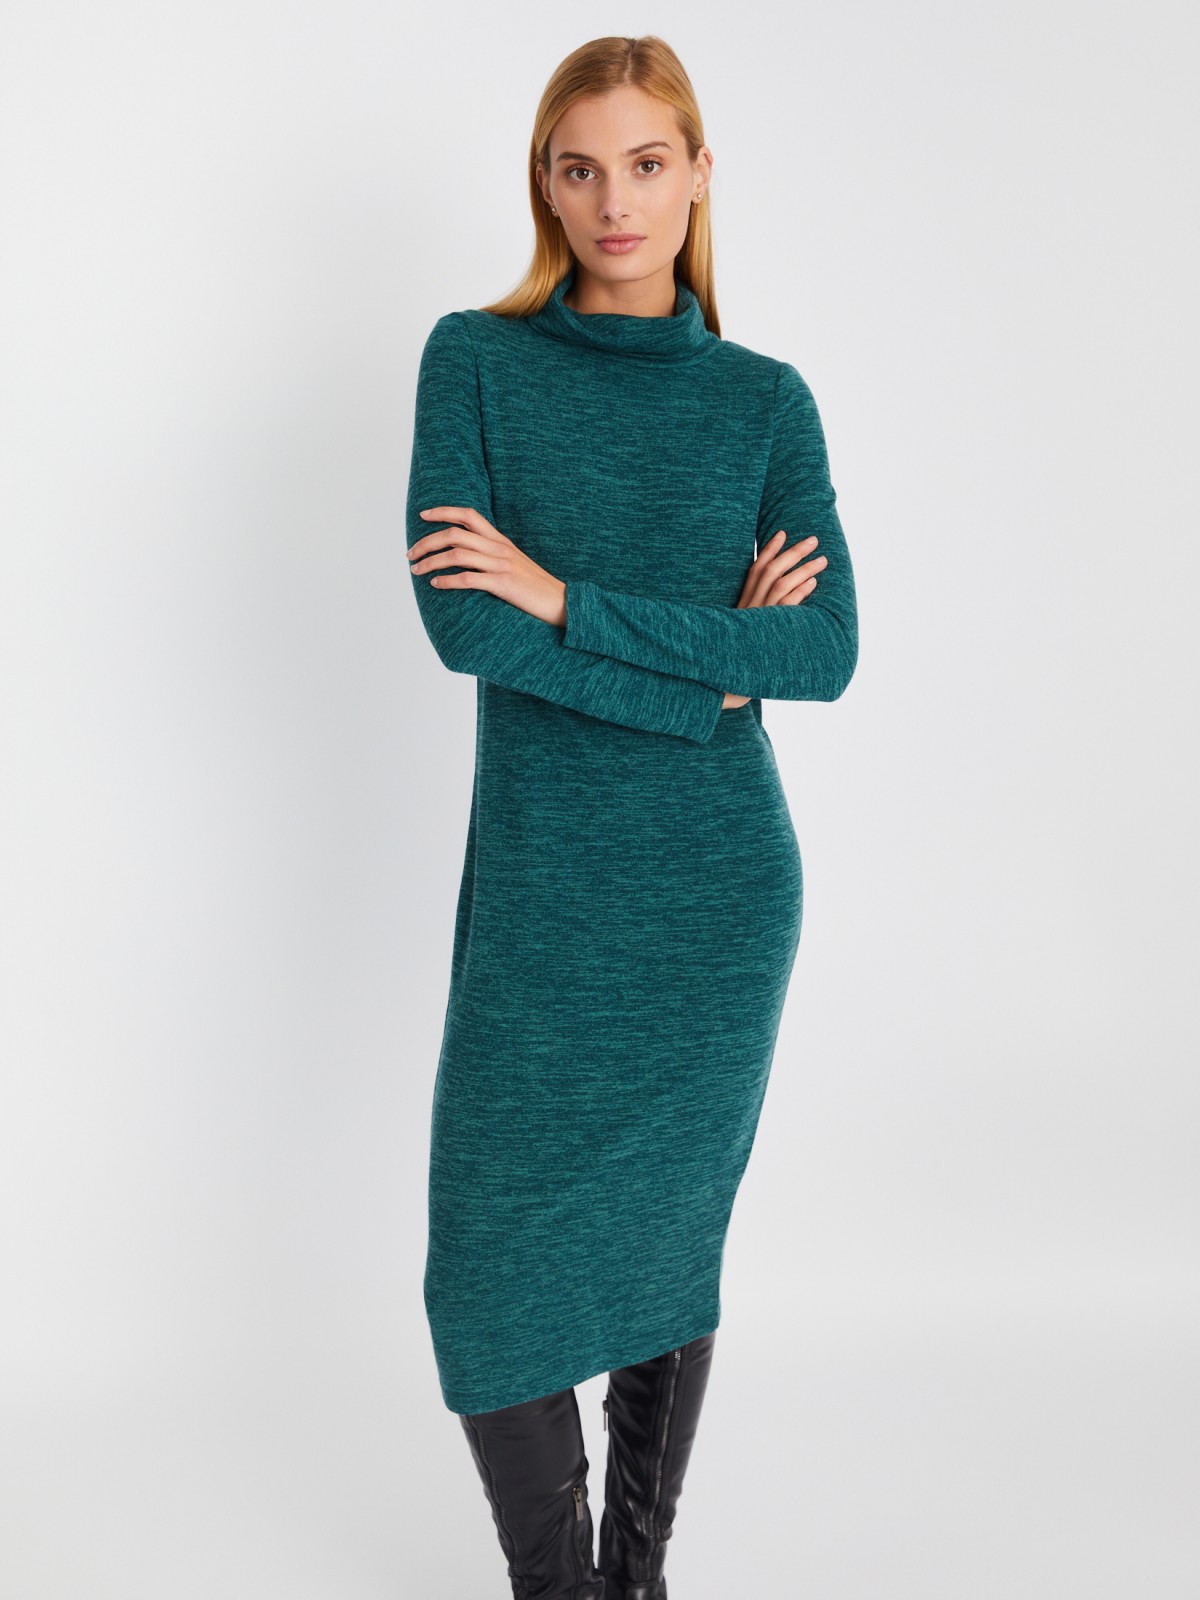 Трикотажное платье-свитер длины миди с высоким горлом